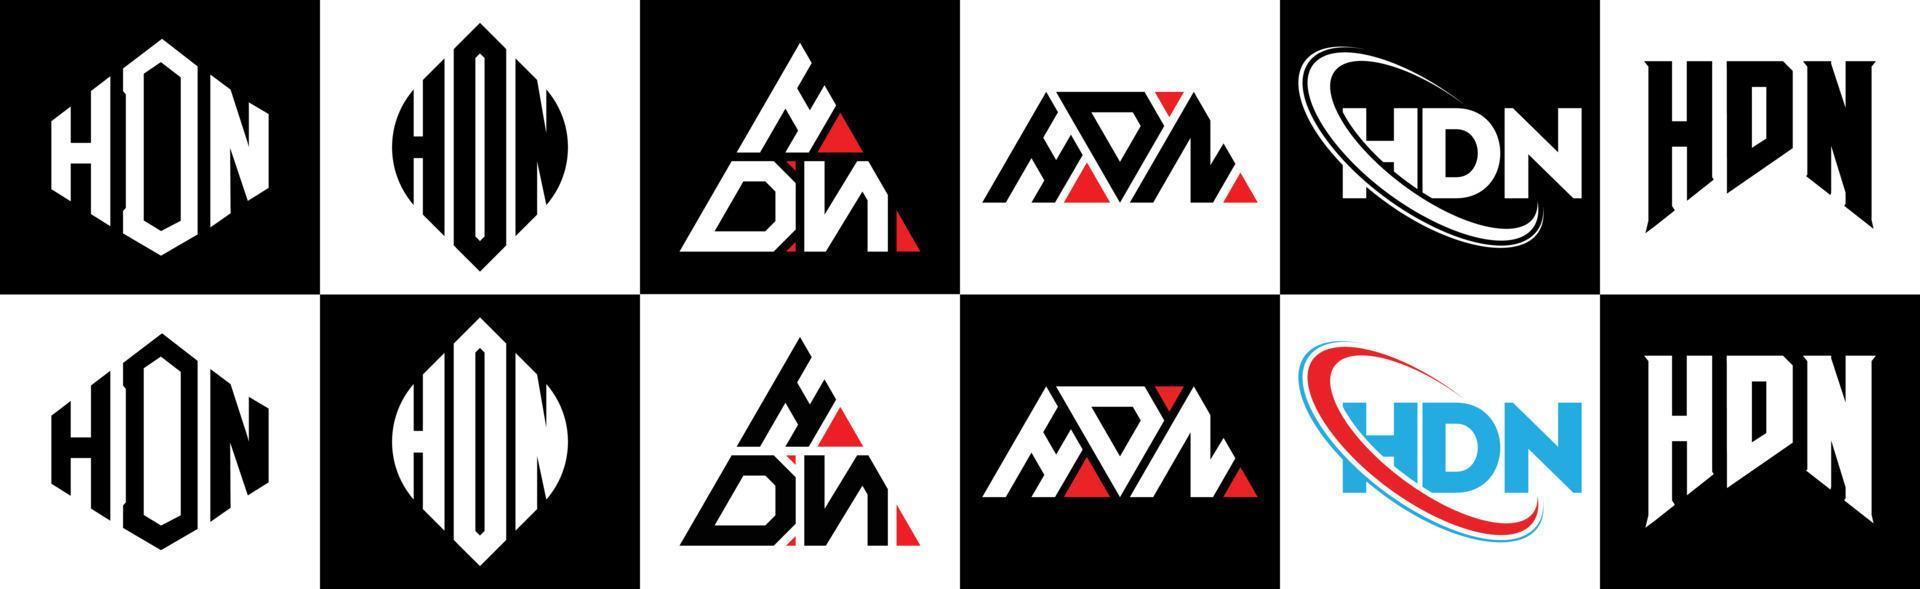 Hdn-Buchstaben-Logo-Design in sechs Stilen. Hdn-Polygon, Kreis, Dreieck, Sechseck, flacher und einfacher Stil mit schwarz-weißem Buchstabenlogo in einer Zeichenfläche. Hdn minimalistisches und klassisches Logo vektor